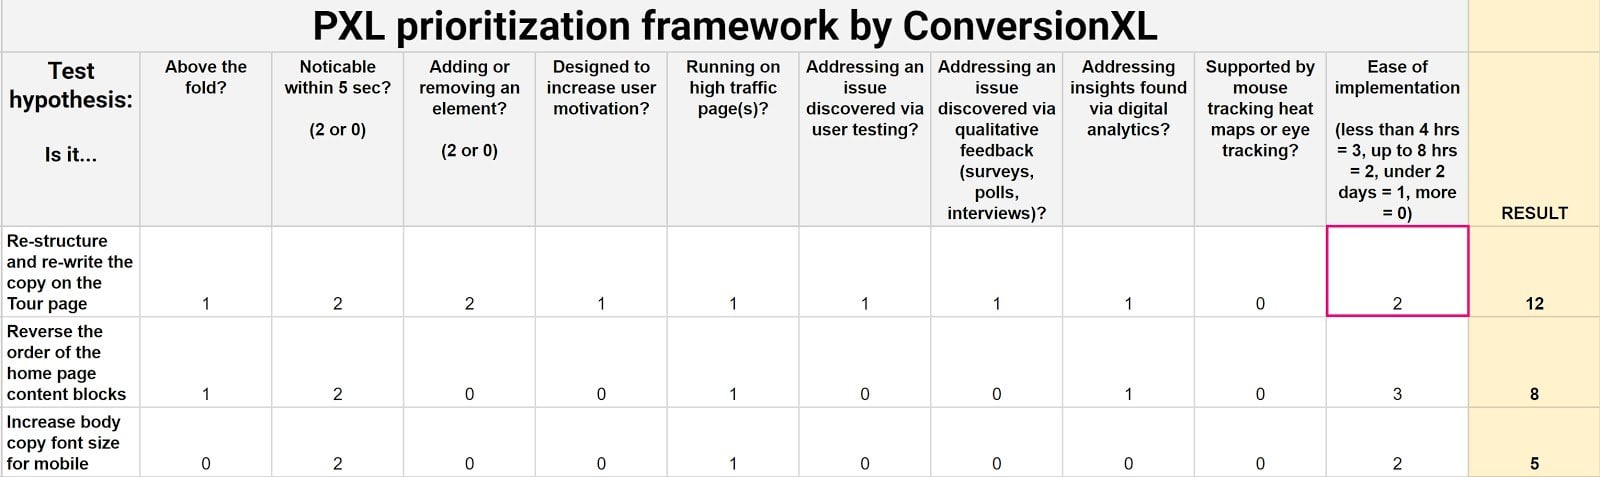 conversionxl prioritization framework